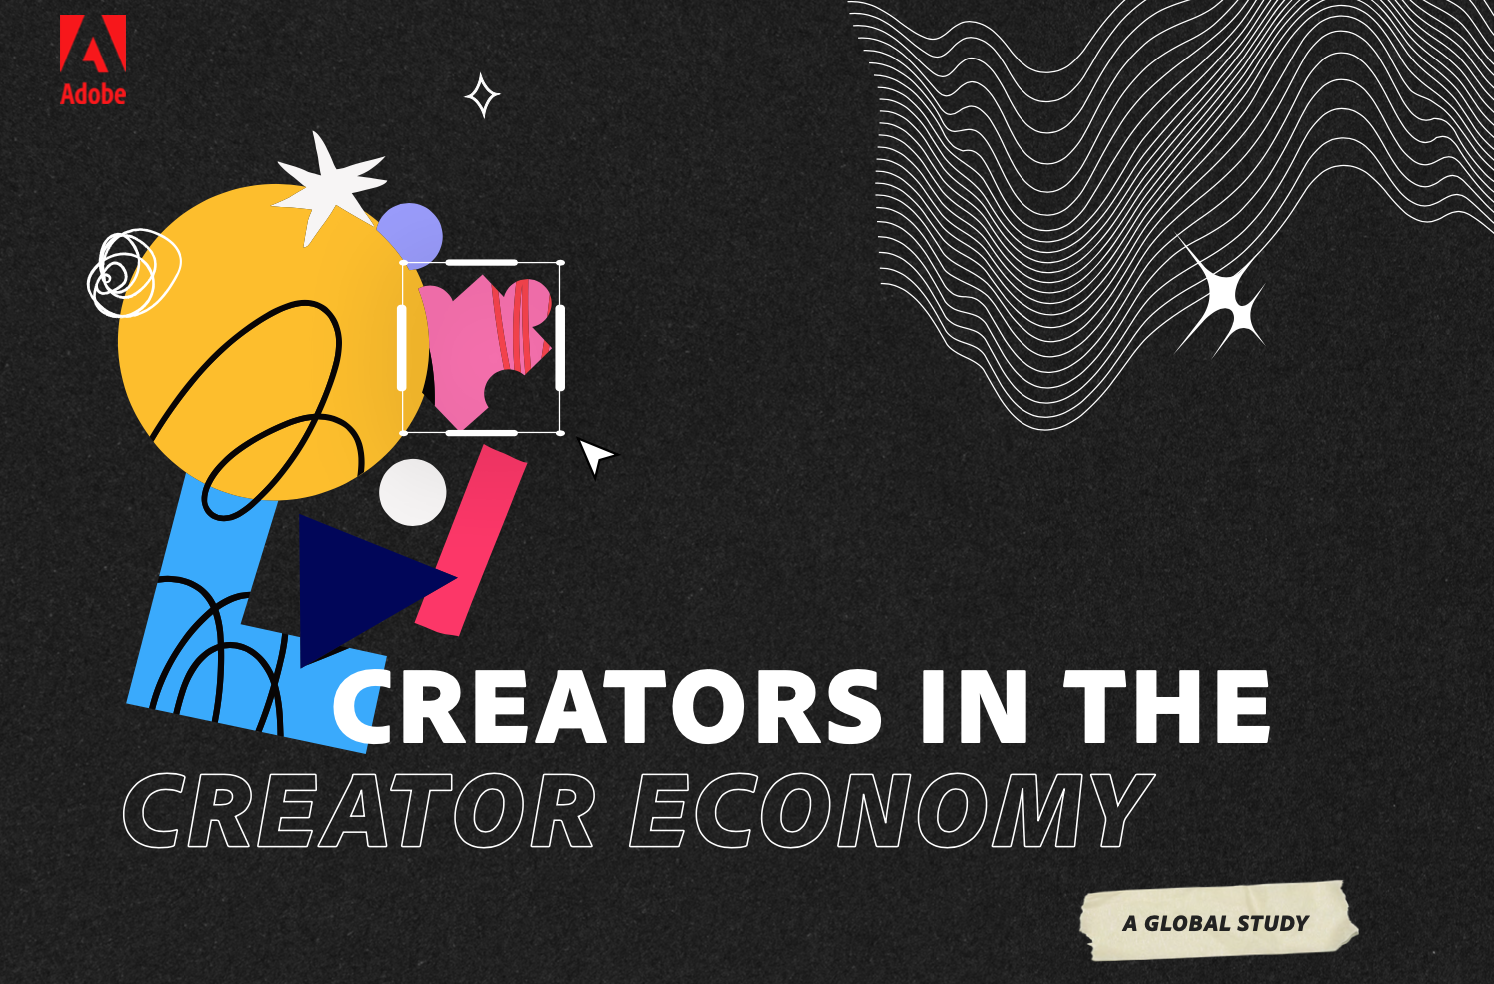 how big is the creator economy?